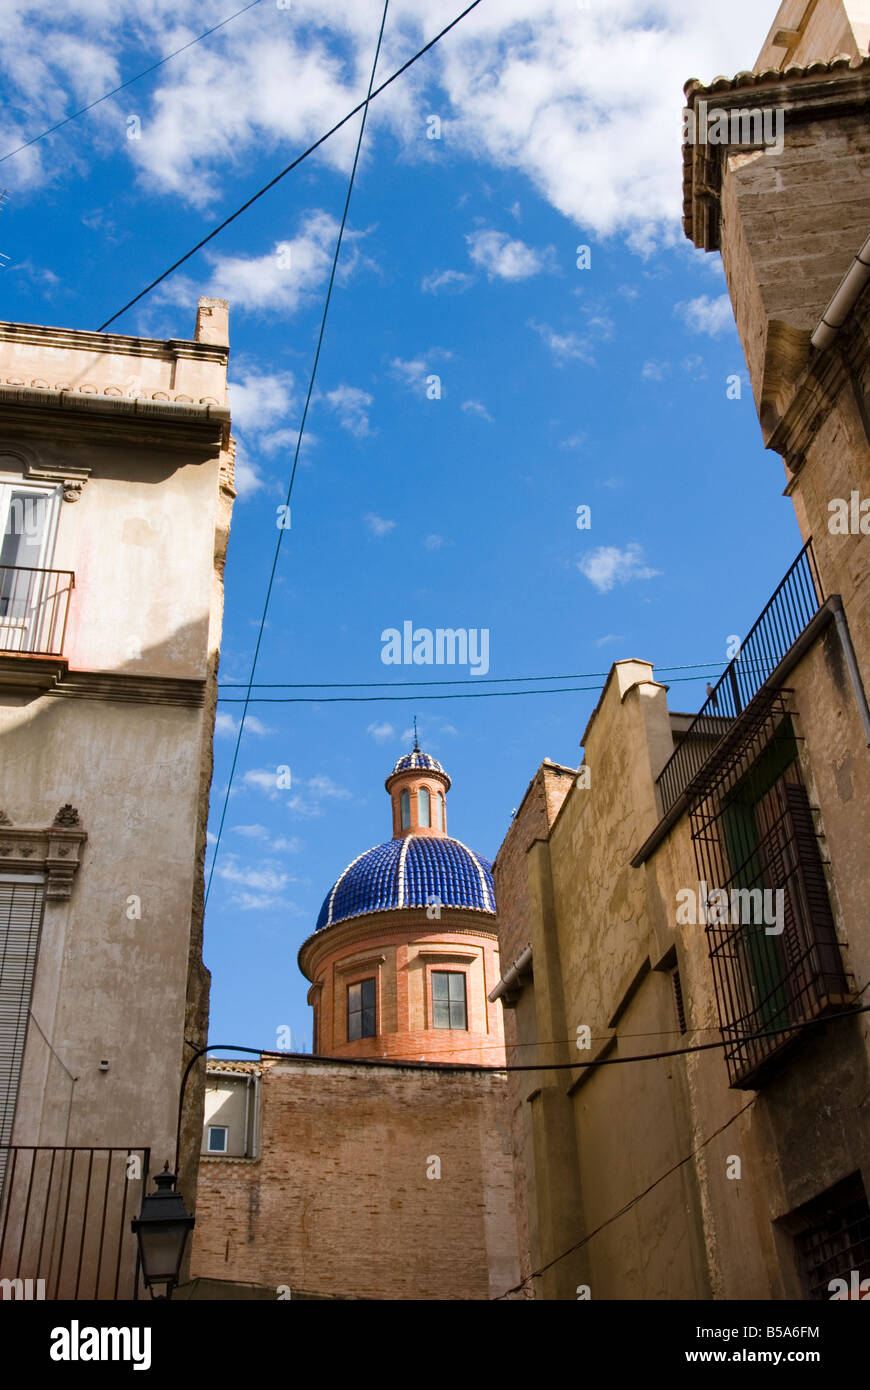 Blu con piastrelle di ceramica in chiesa duomo che affaccia sui tetti nel vecchio centro storico di El Carmen a Valencia Spagna Foto Stock